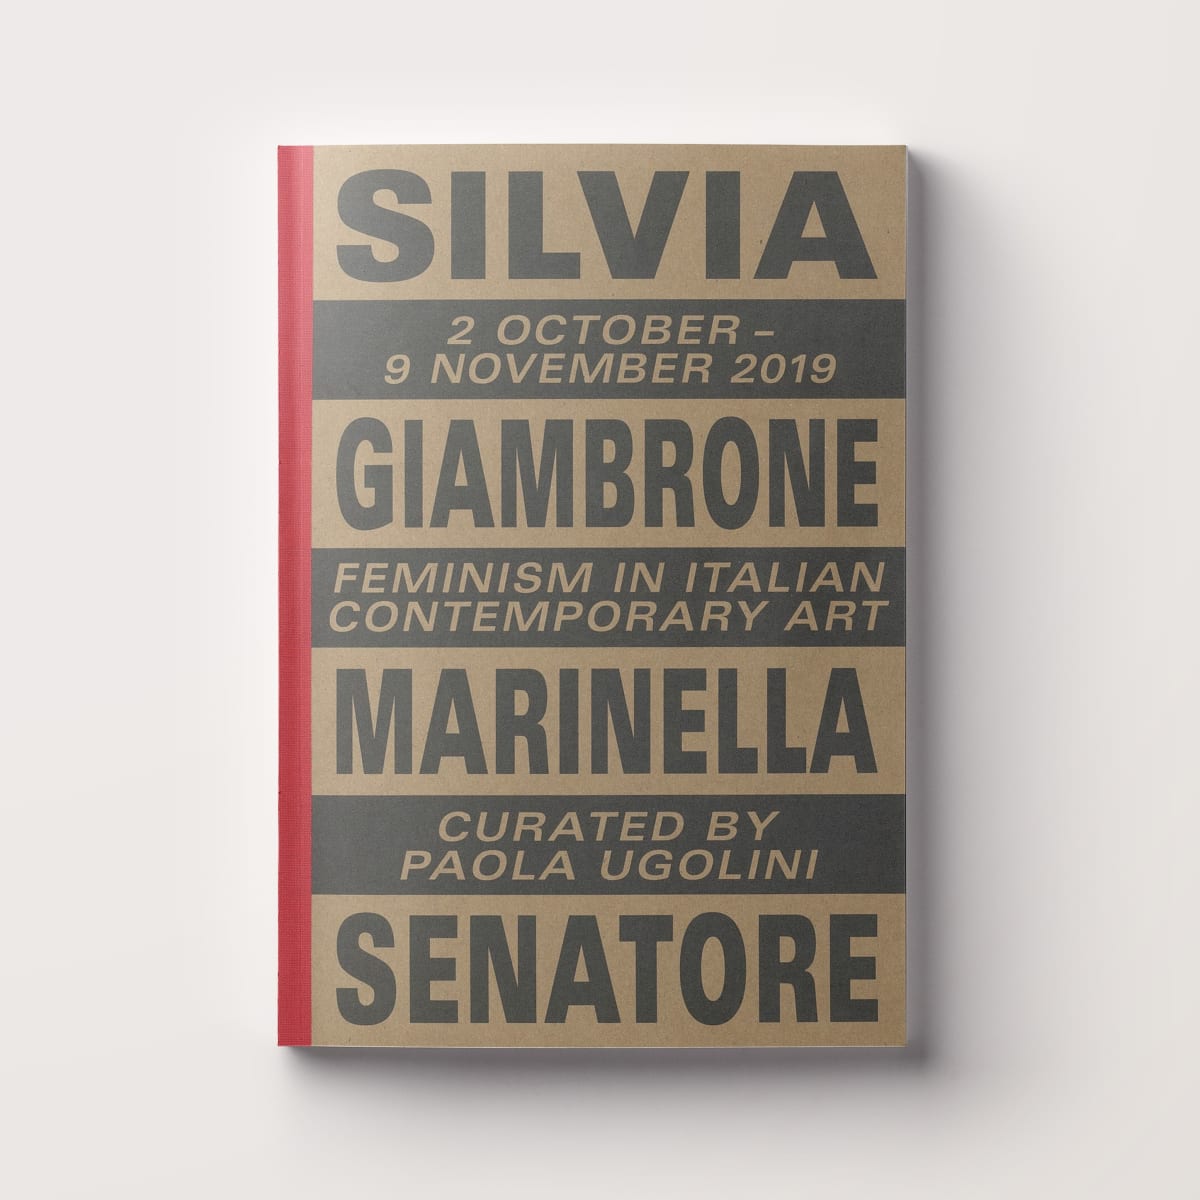 Silvia Giambrone and Marinella Senatore